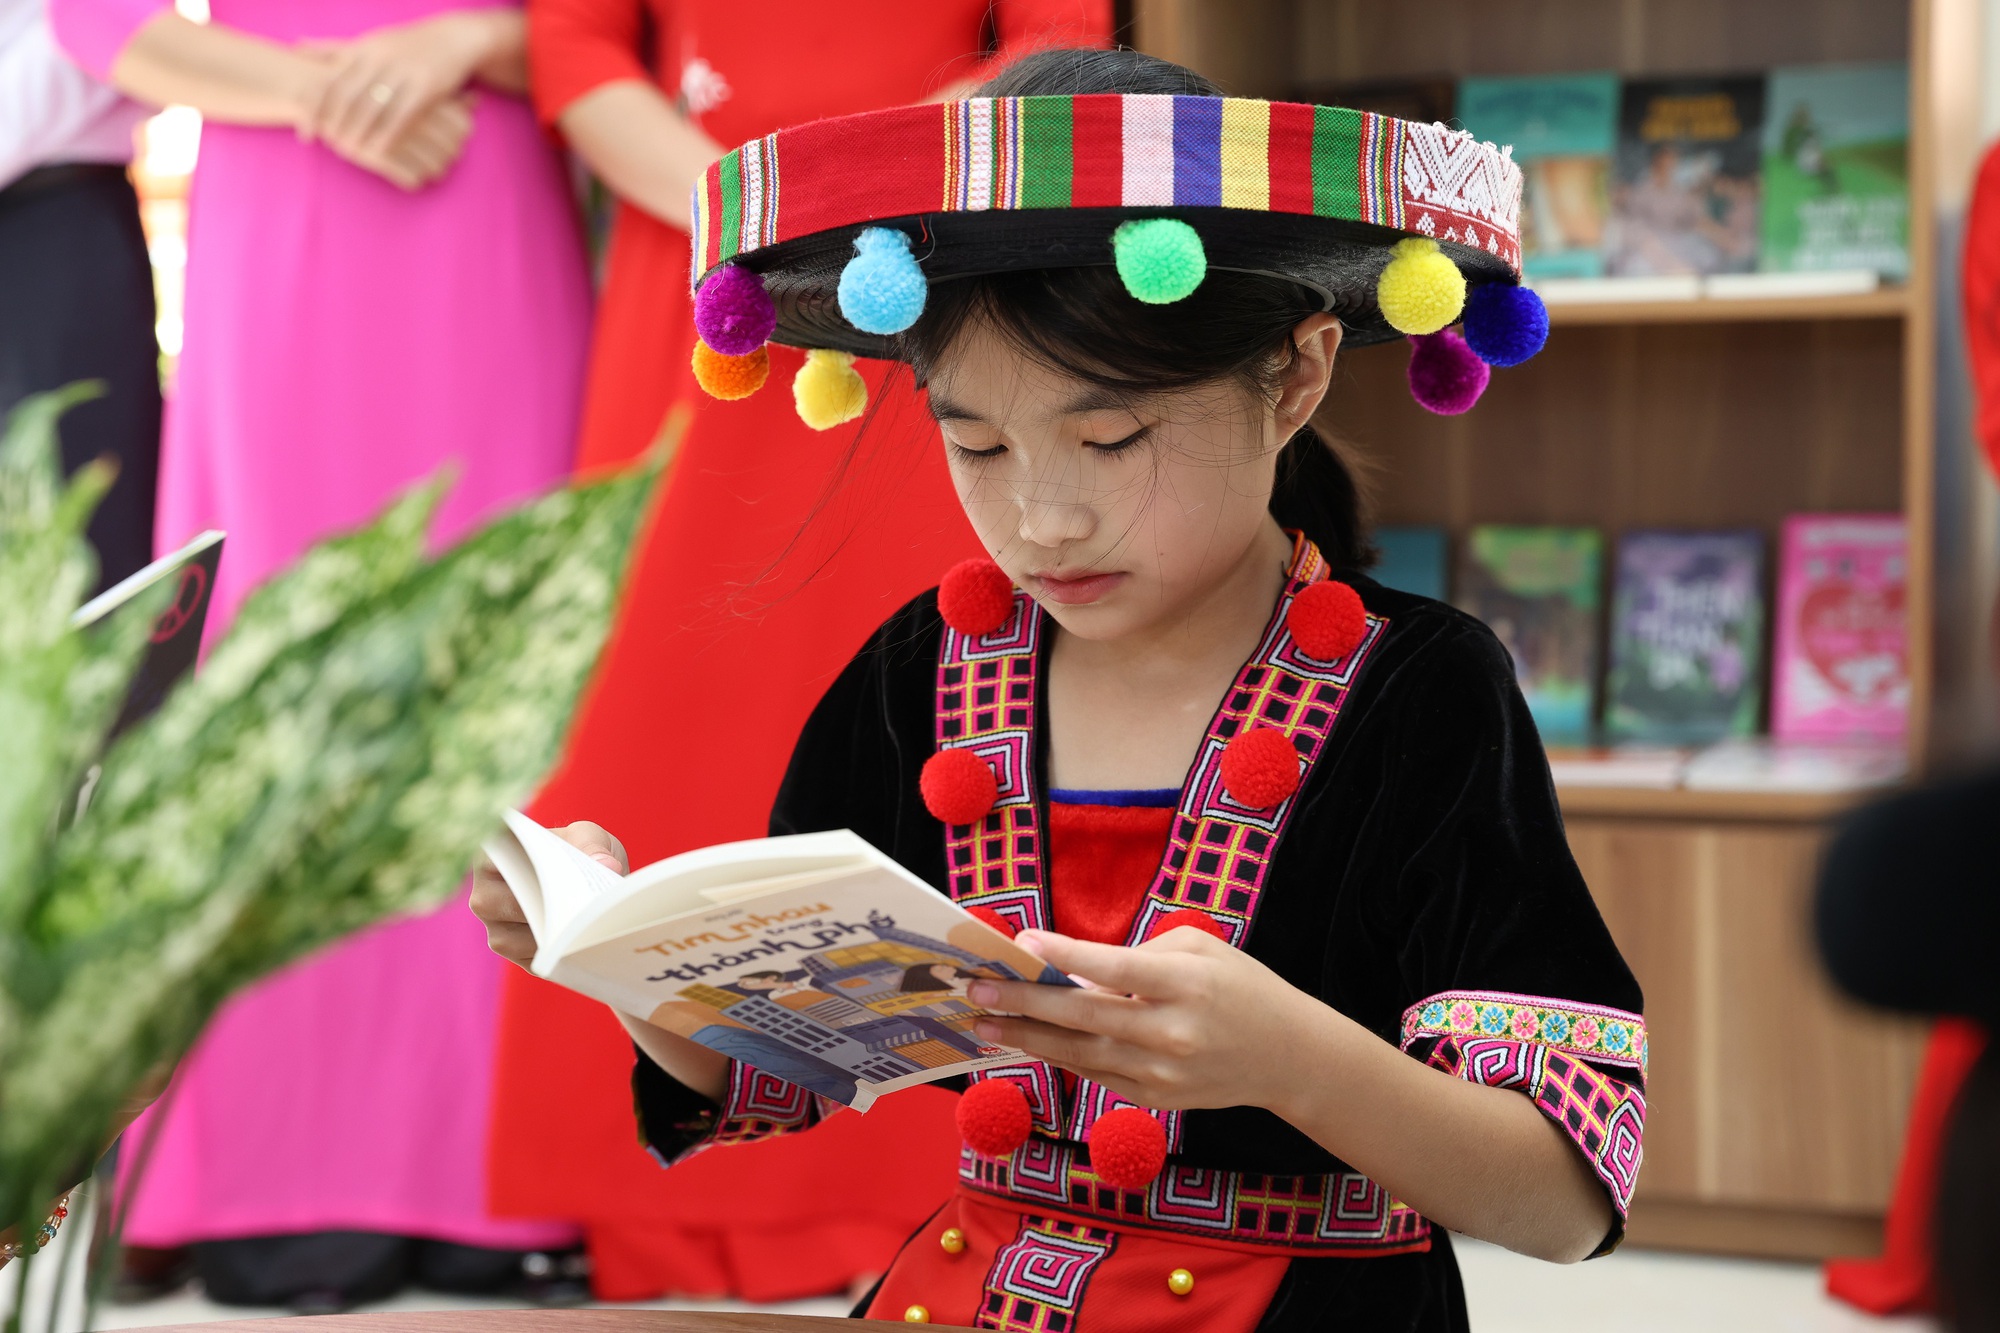 Vietnam Airlines xây dựng Thư viện xanh cho trẻ em tại vùng cao đặc biệt khó khăn - Ảnh 3.